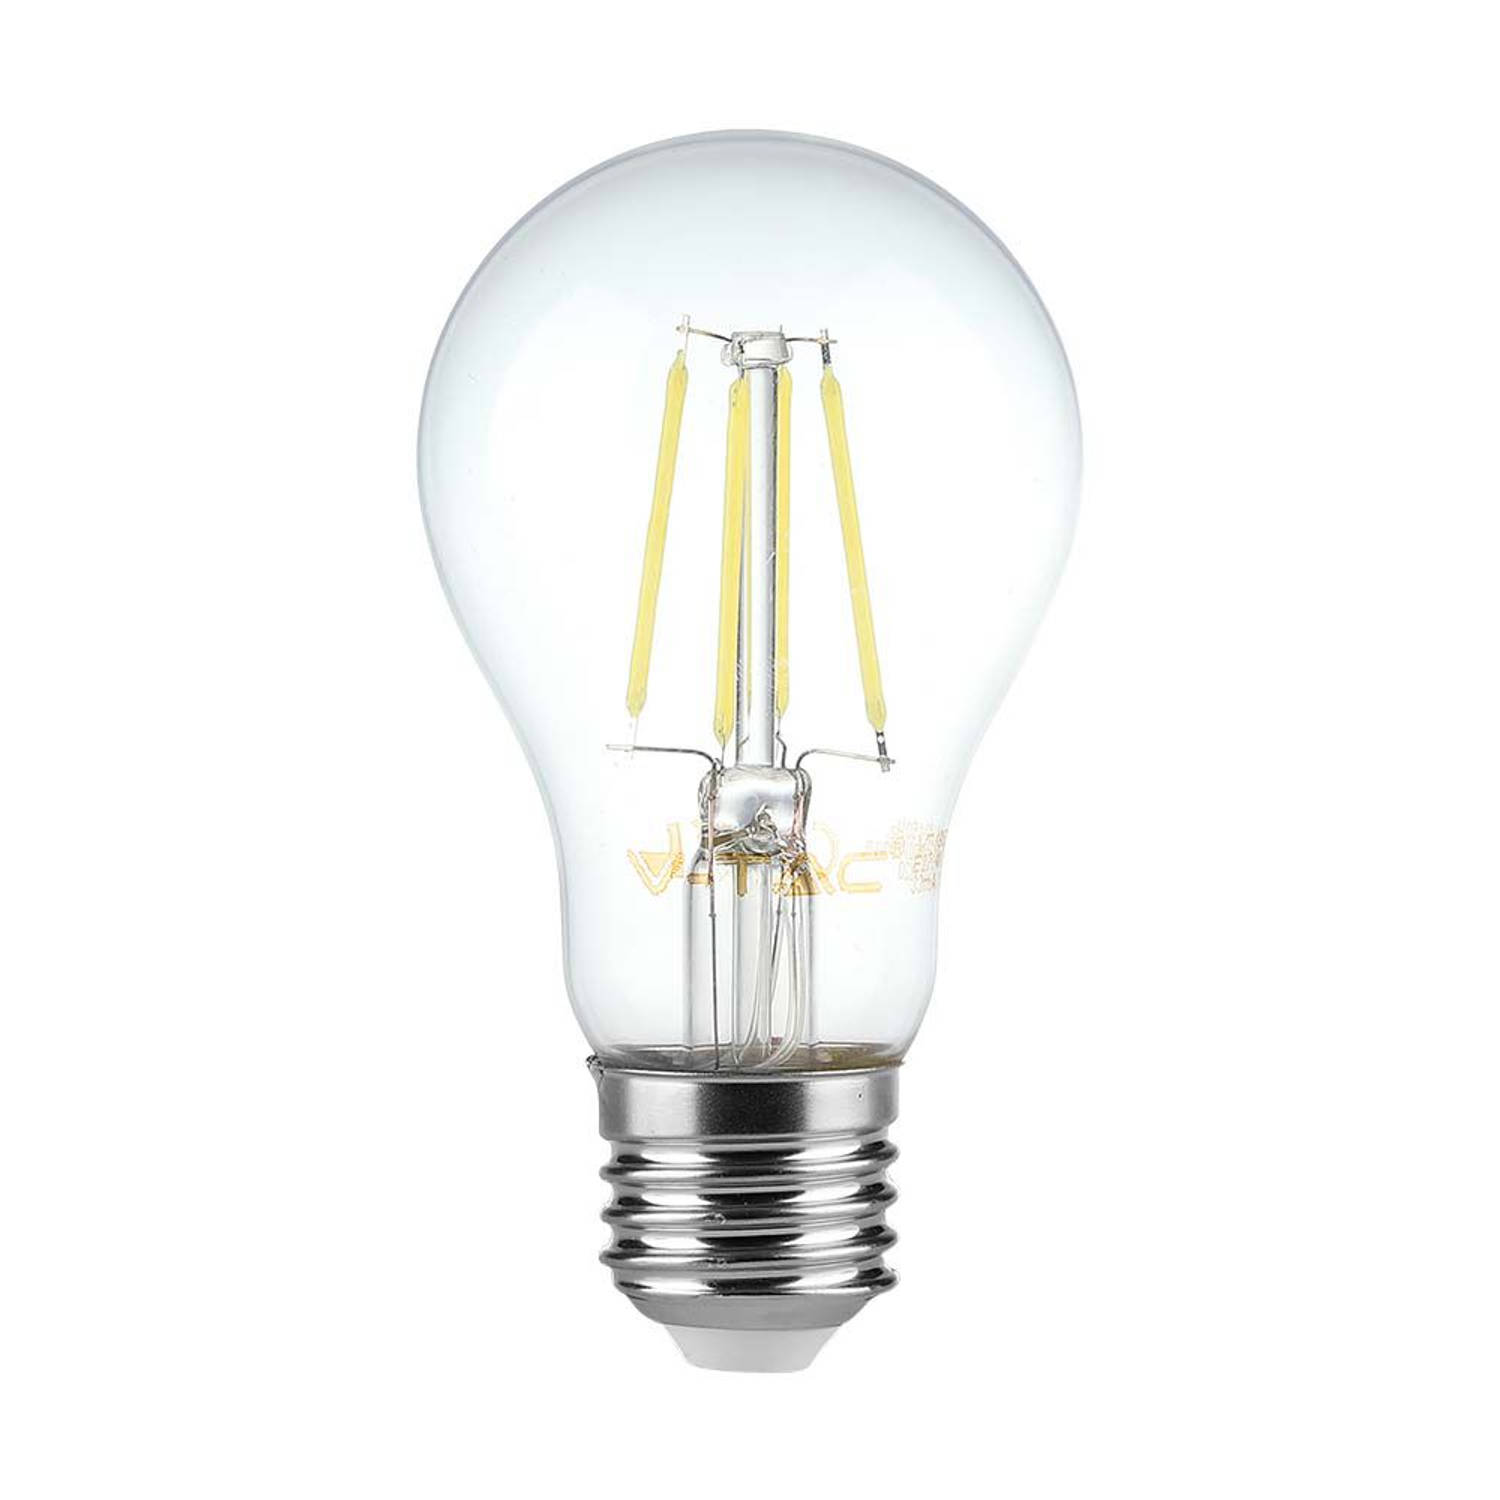 V-TAC VT-2288D-N E27 Transparante LED Lamp - Helder - GLS - IP20 - 8W - 720 Lumen - 3000K